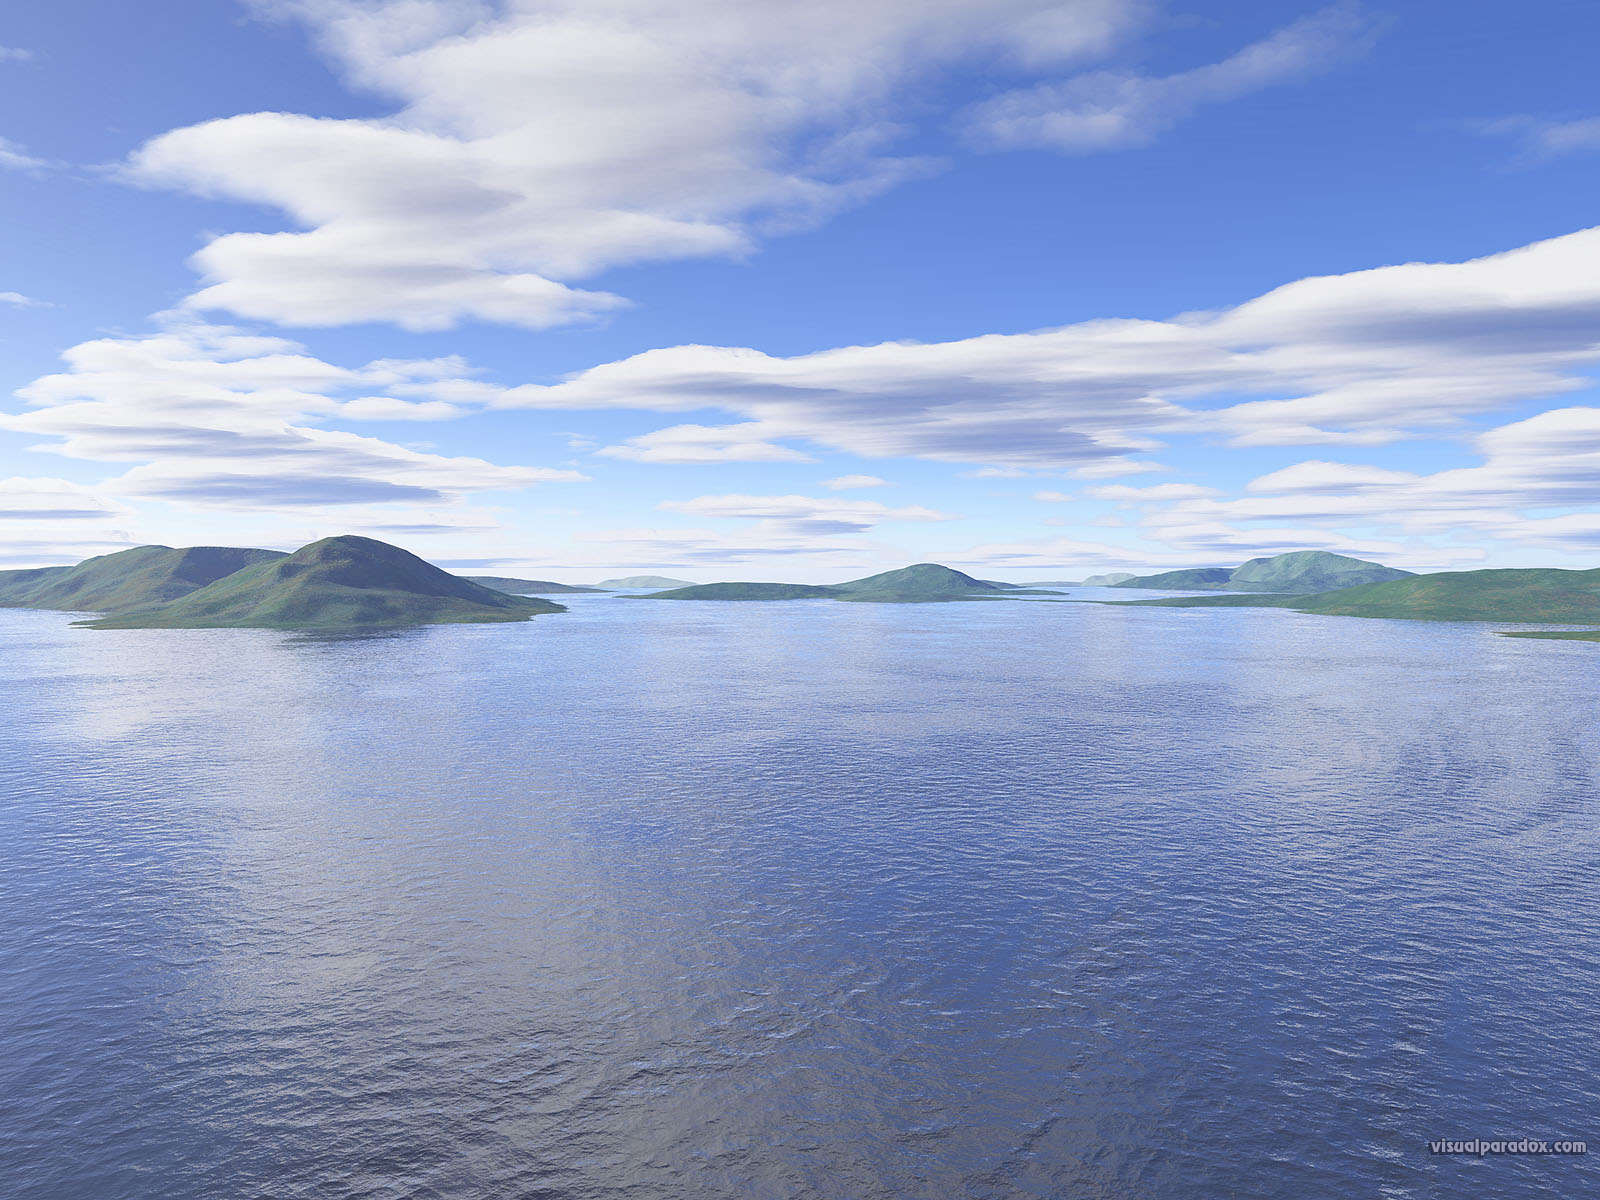 Water, Waves, Ocean, Islands, Clouds, Sky, Blue, Lagoon, - Islet - HD Wallpaper 